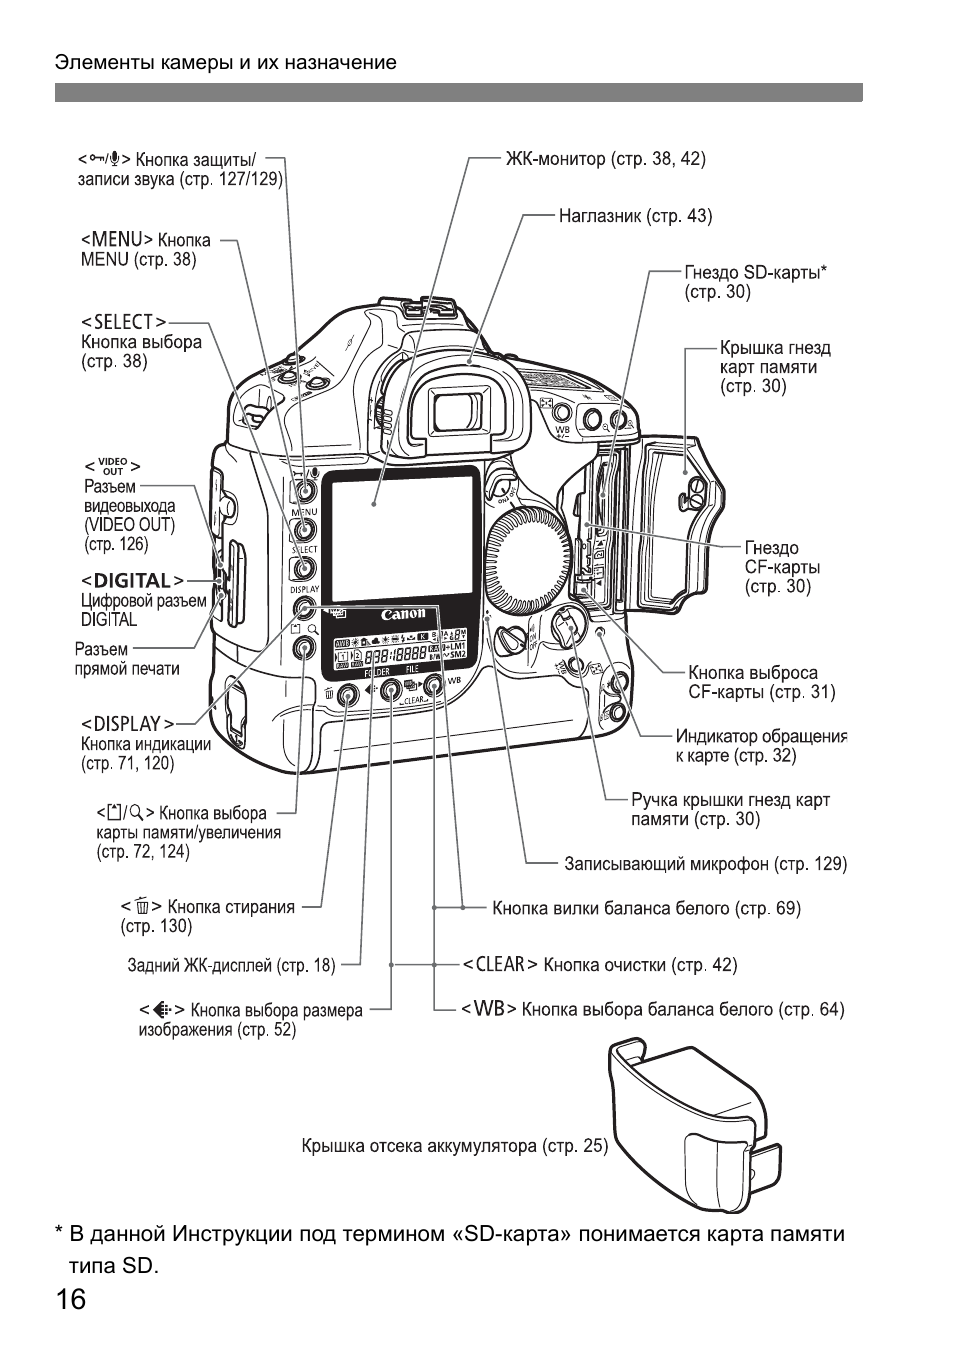 Инструкция по эксплуатации Canon EOS 1D Mark II N | Страница 16 / 196